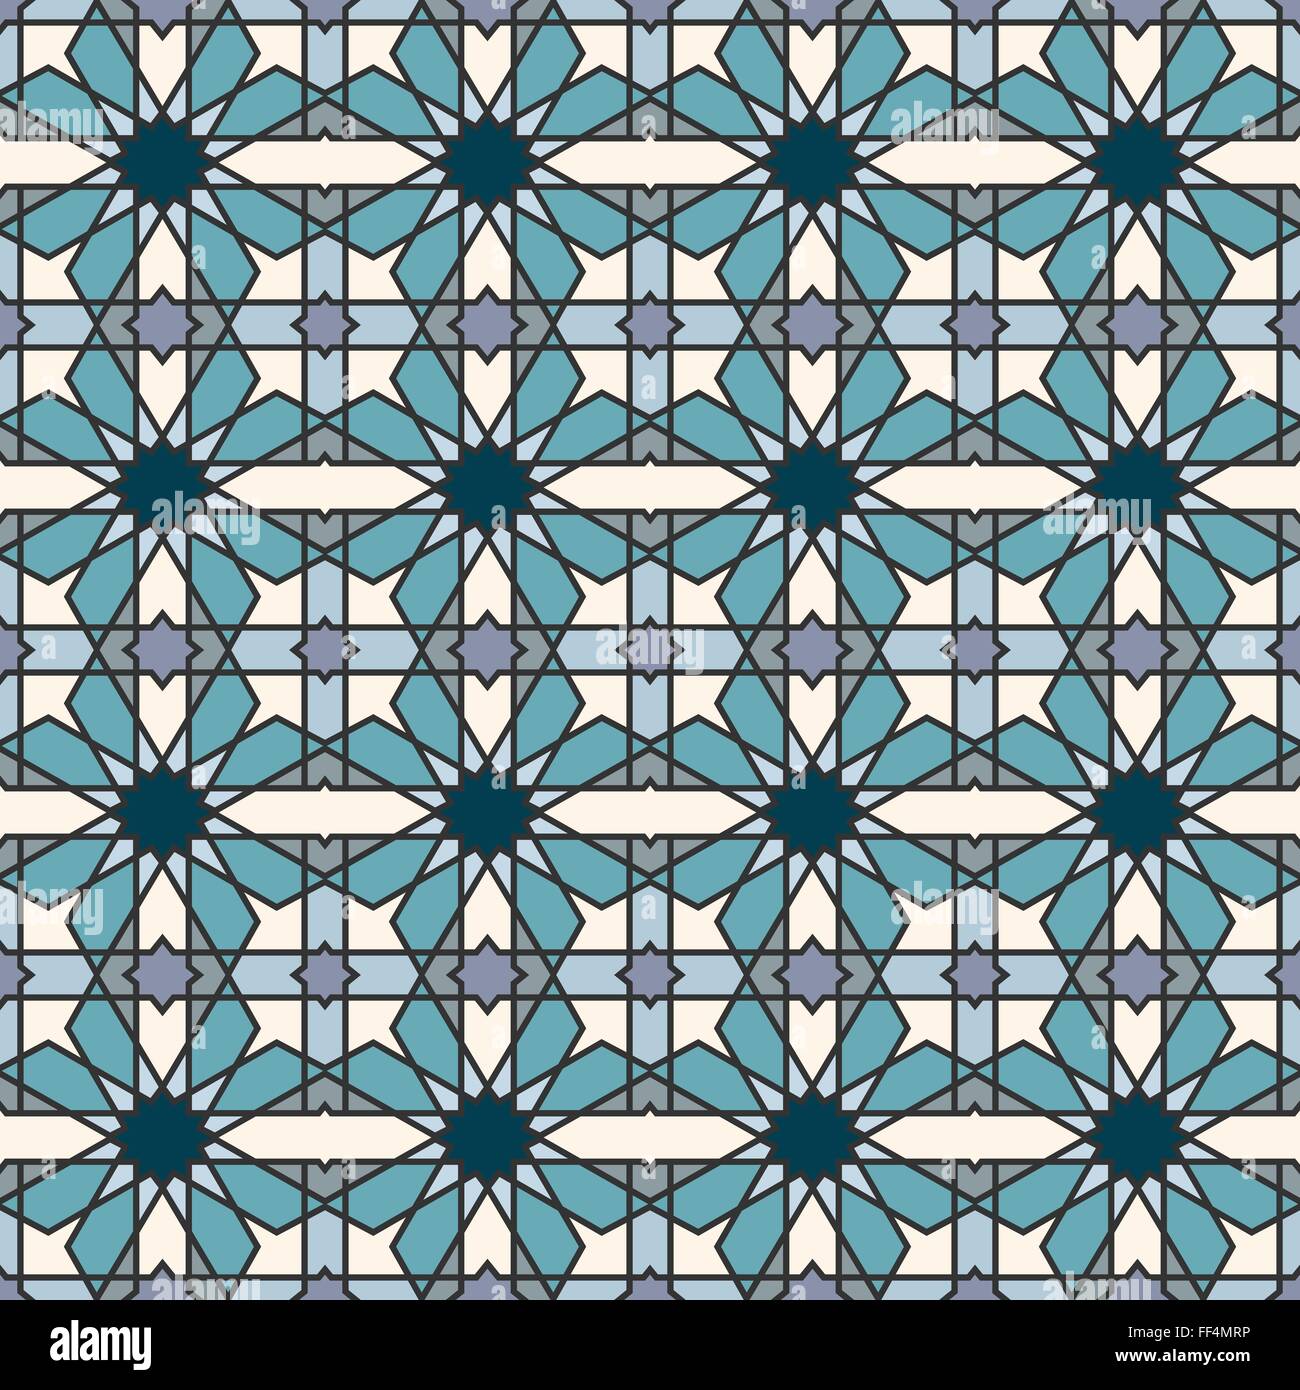 Astratta geometrica perfetta mosaico islamico per la progettazione Illustrazione Vettoriale